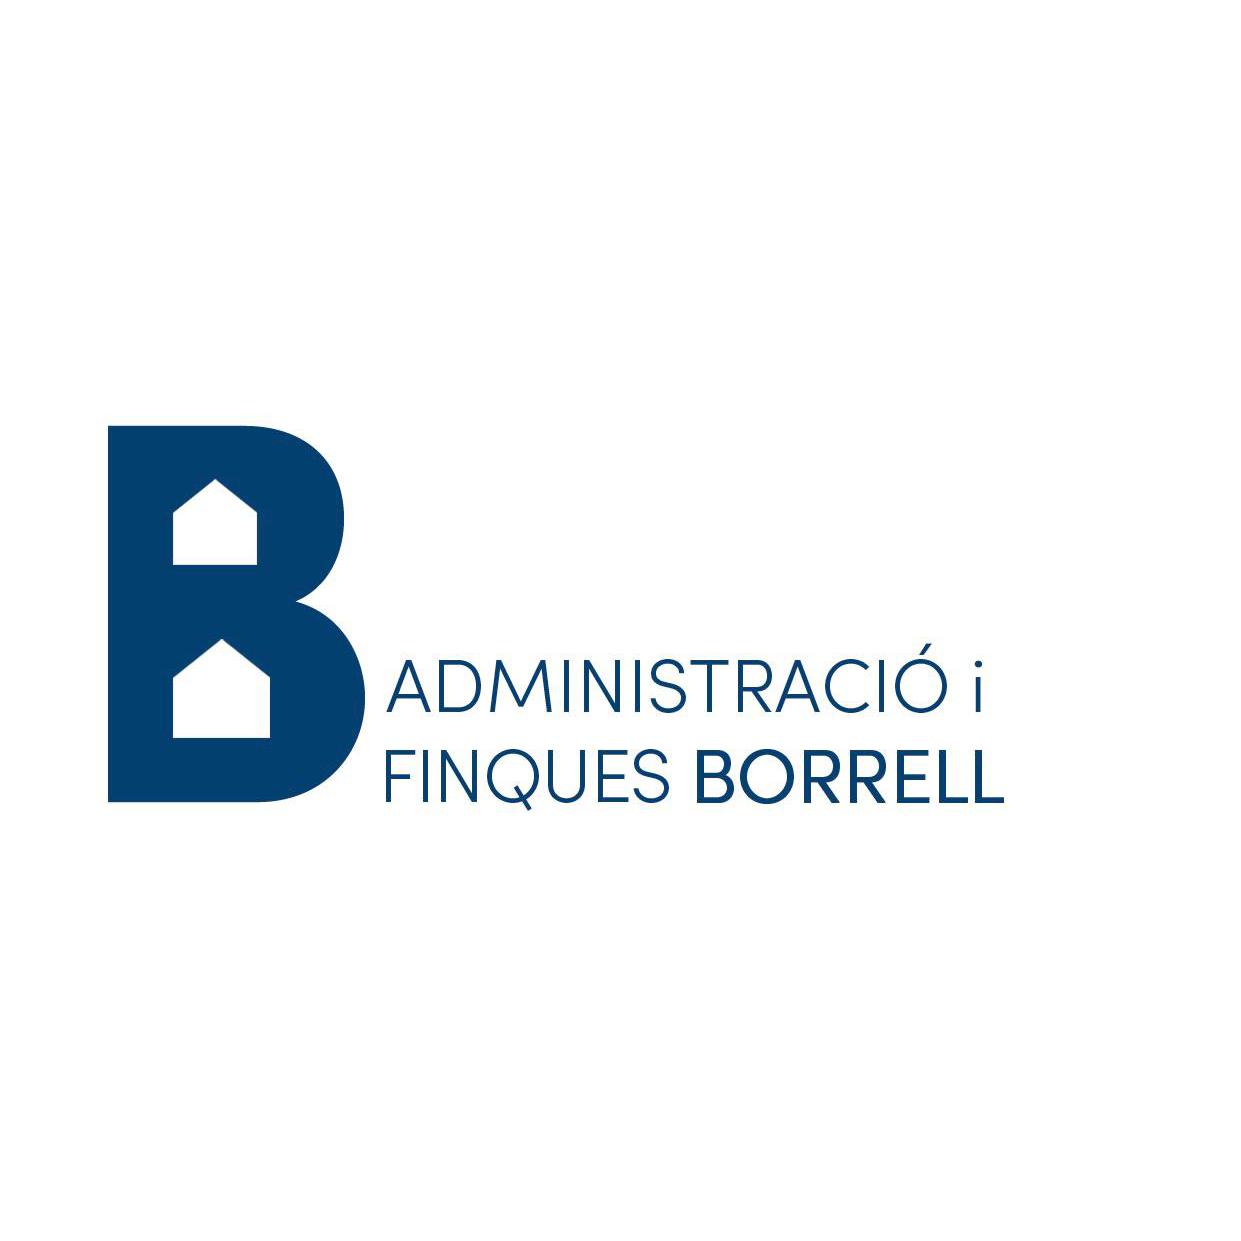 Administracio I Finques Borrell Logo